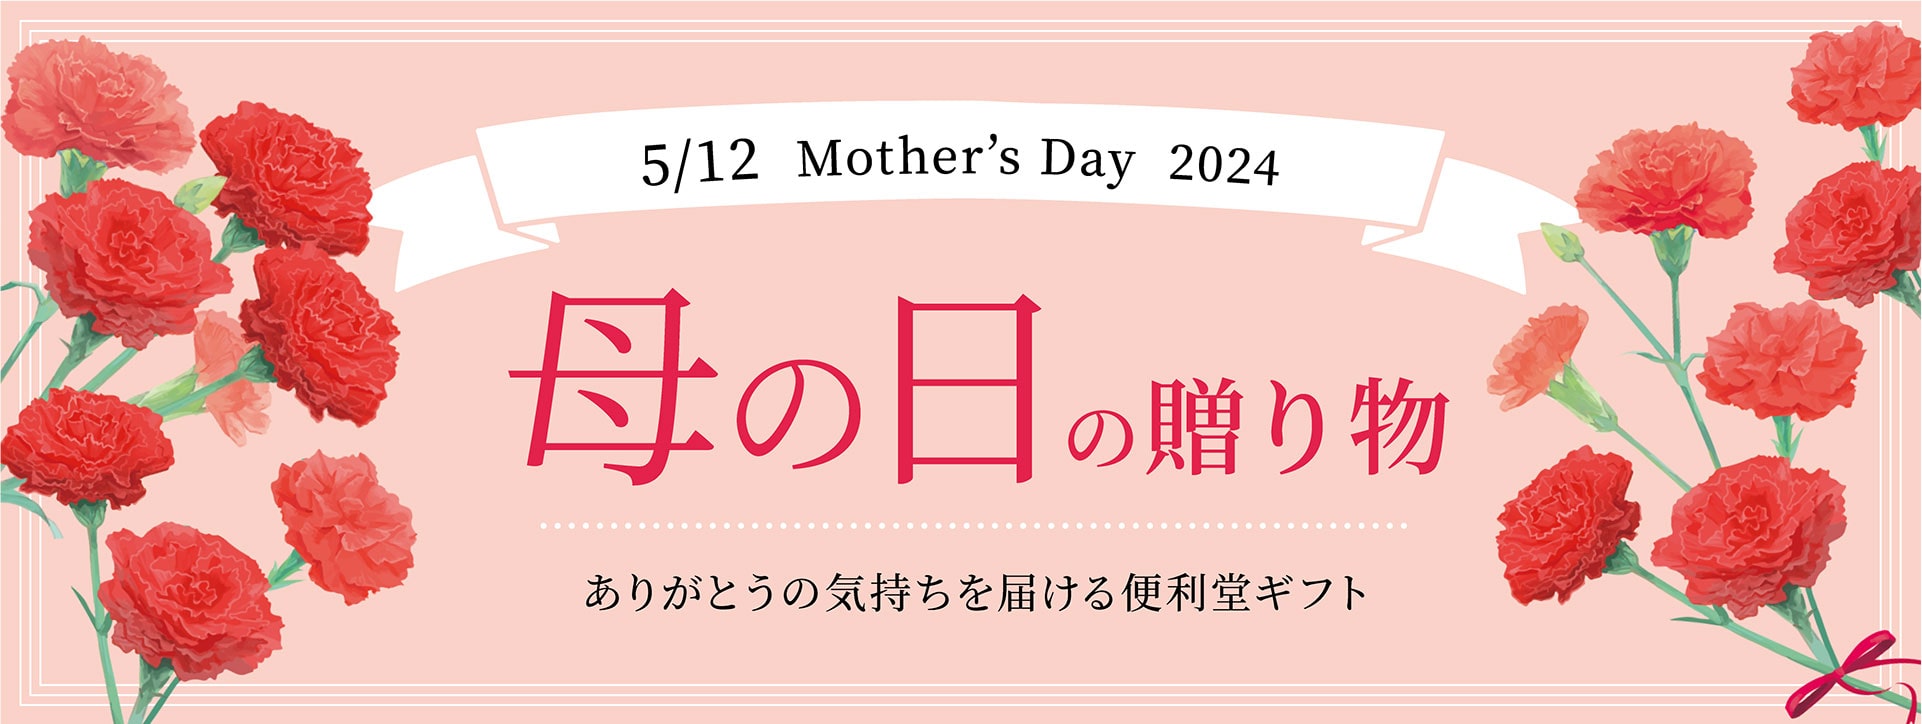 「母の日キャンペーン」対象商品